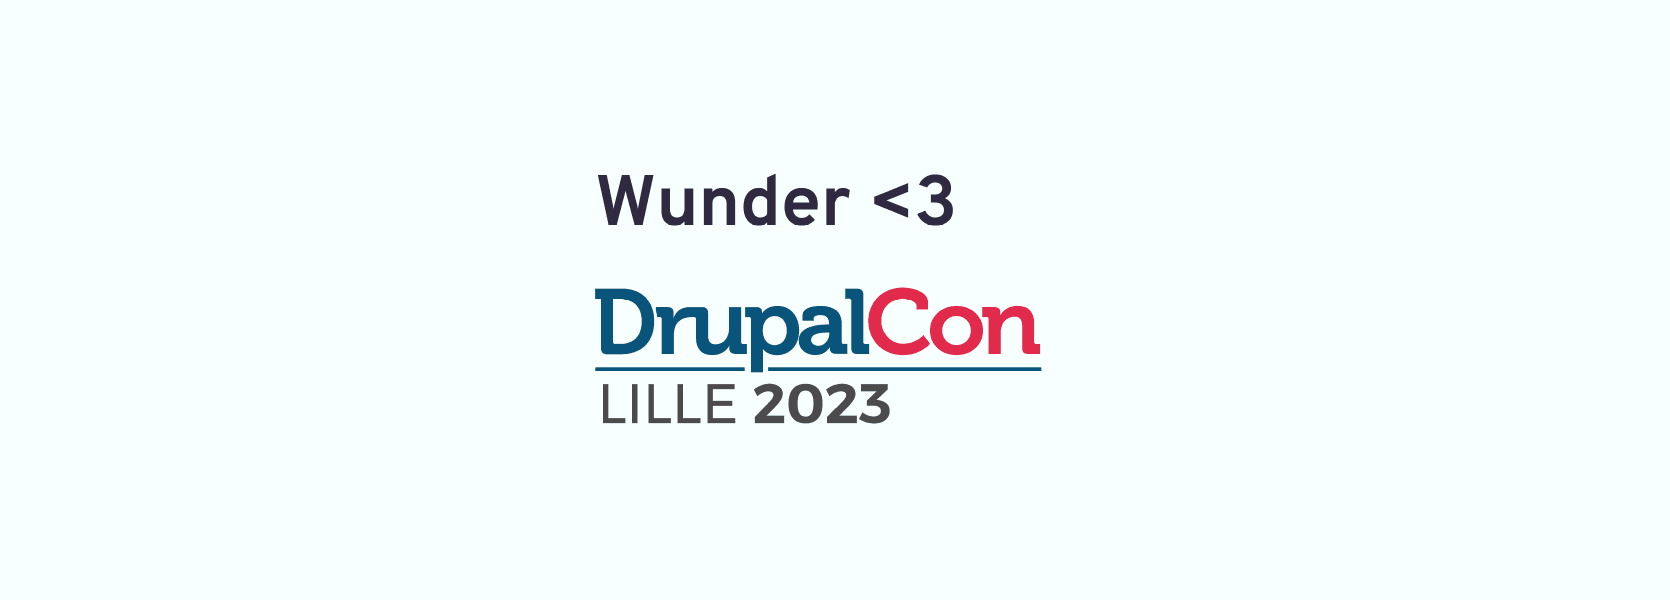 Wunder loves DrupalCon Lille